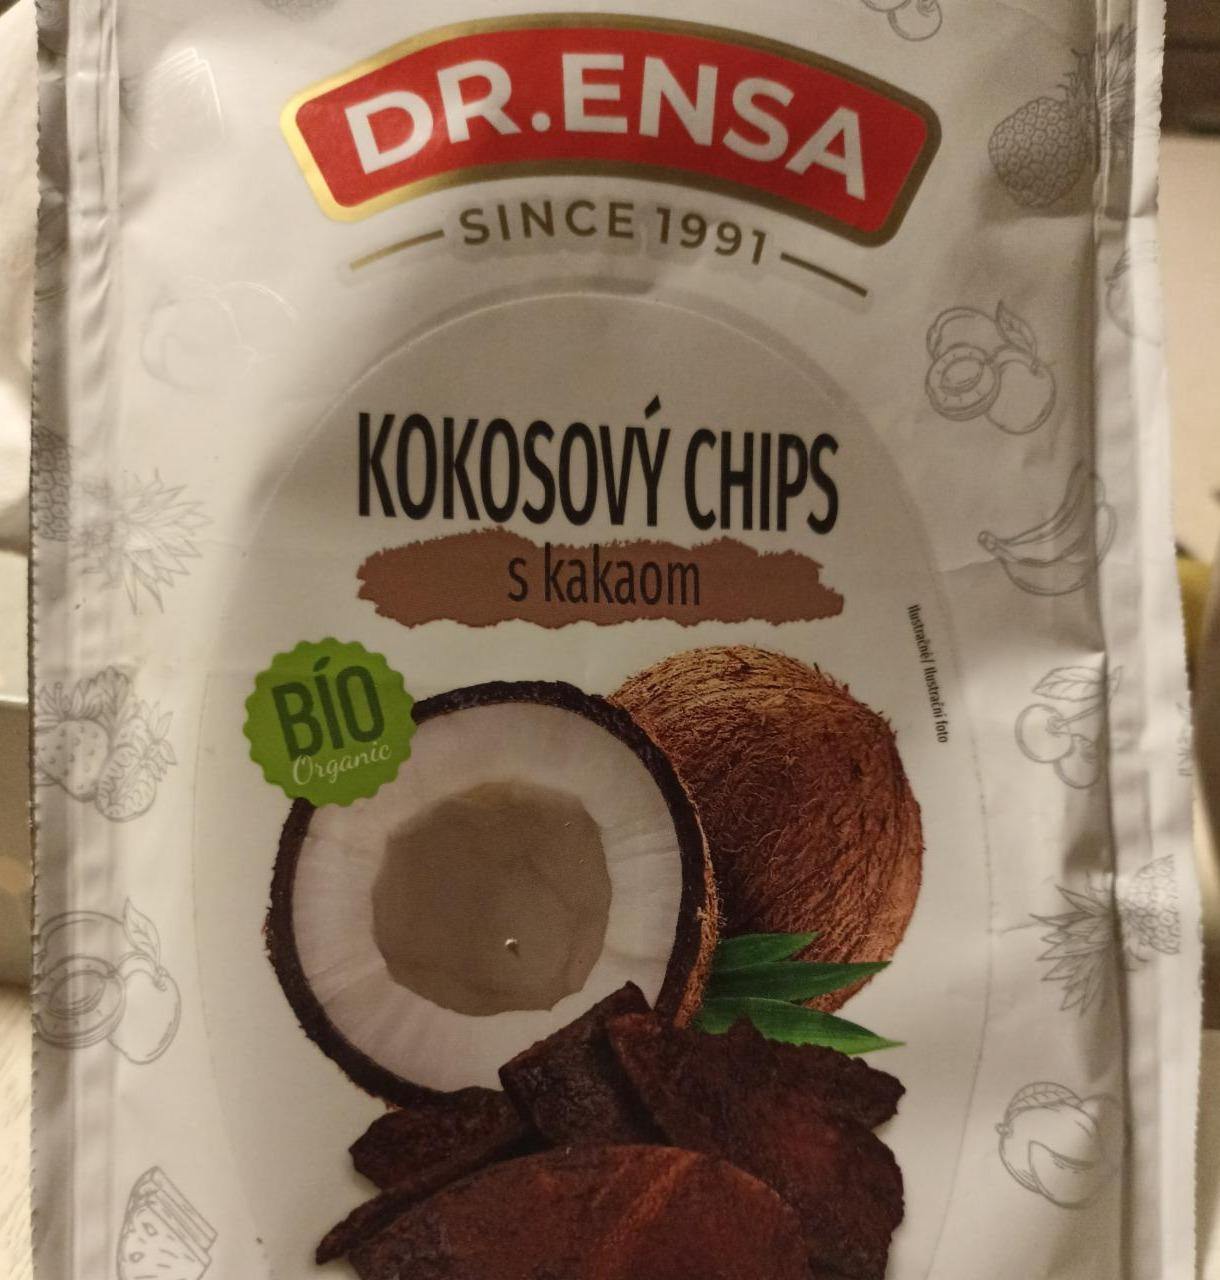 Fotografie - Bio Kokosový chips s kakaom Dr.Ensa